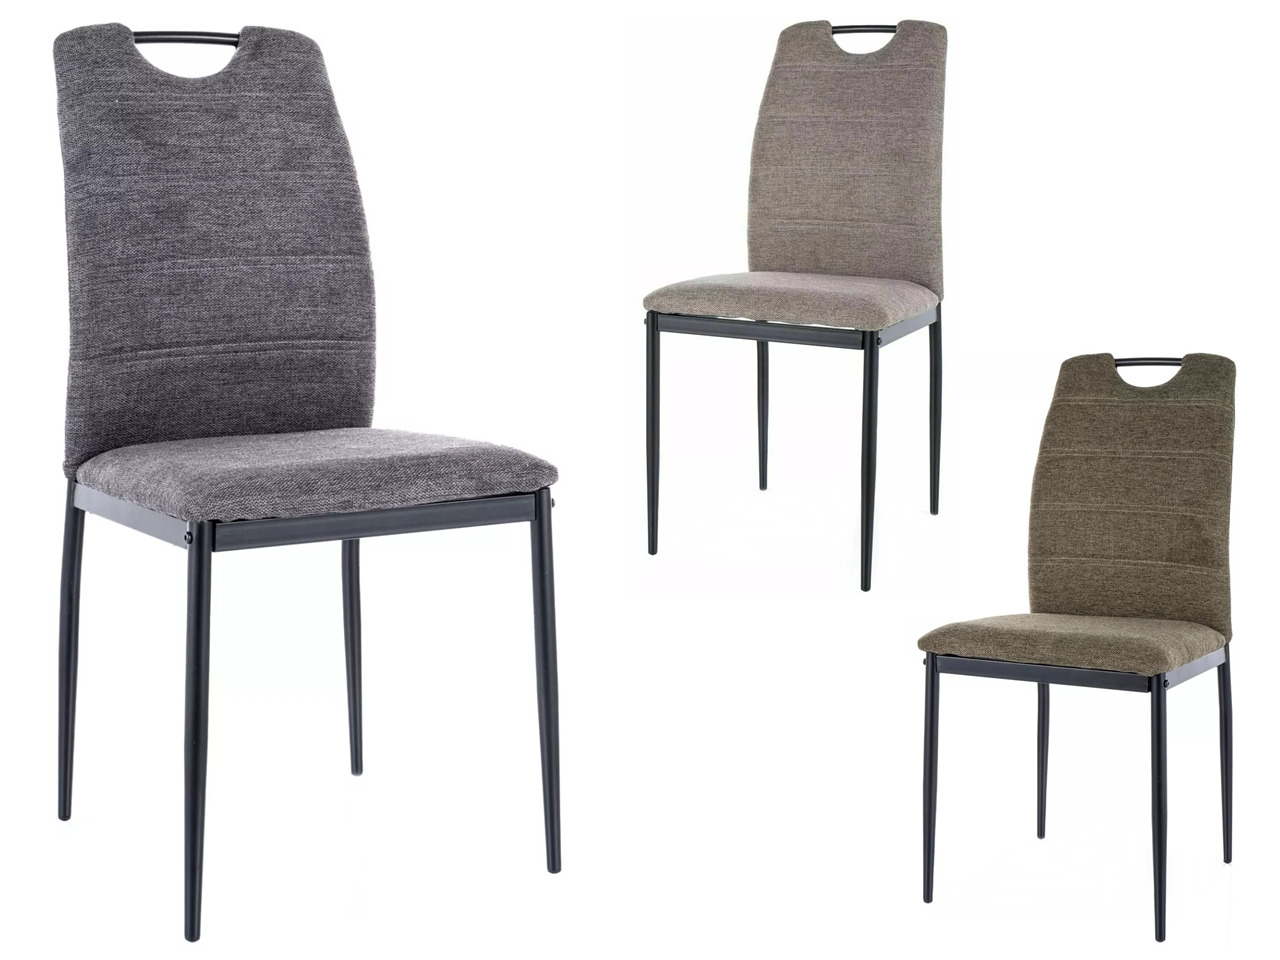 SIG-Rip Brego modern fémvázas szék